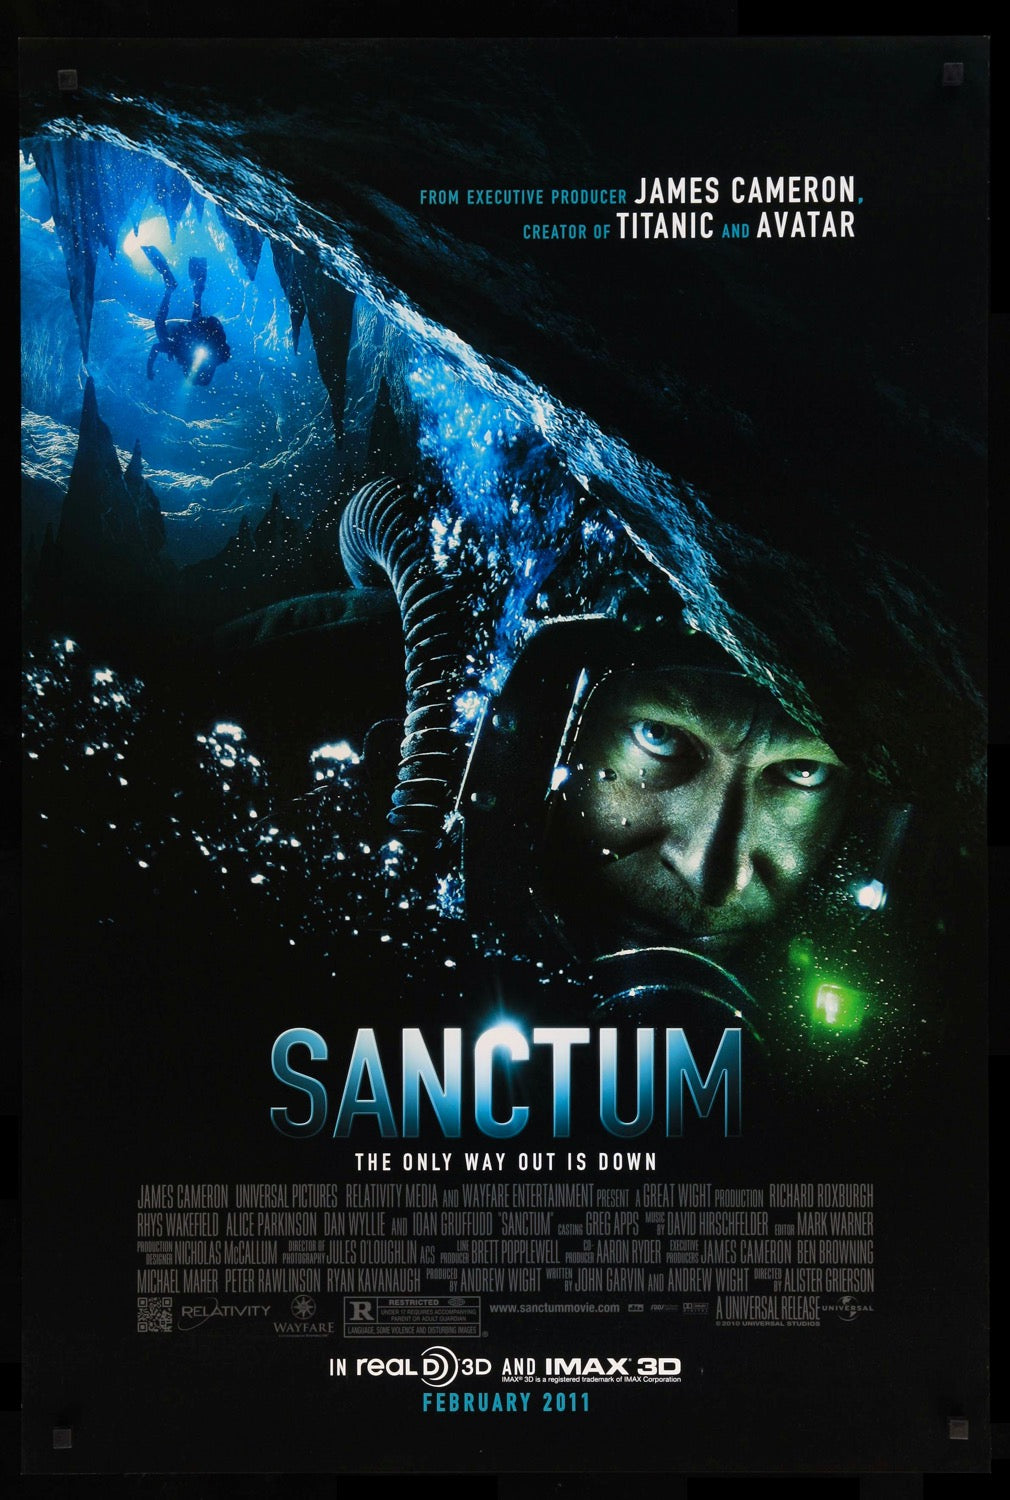 Sanctum (2011) original movie poster for sale at Original Film Art